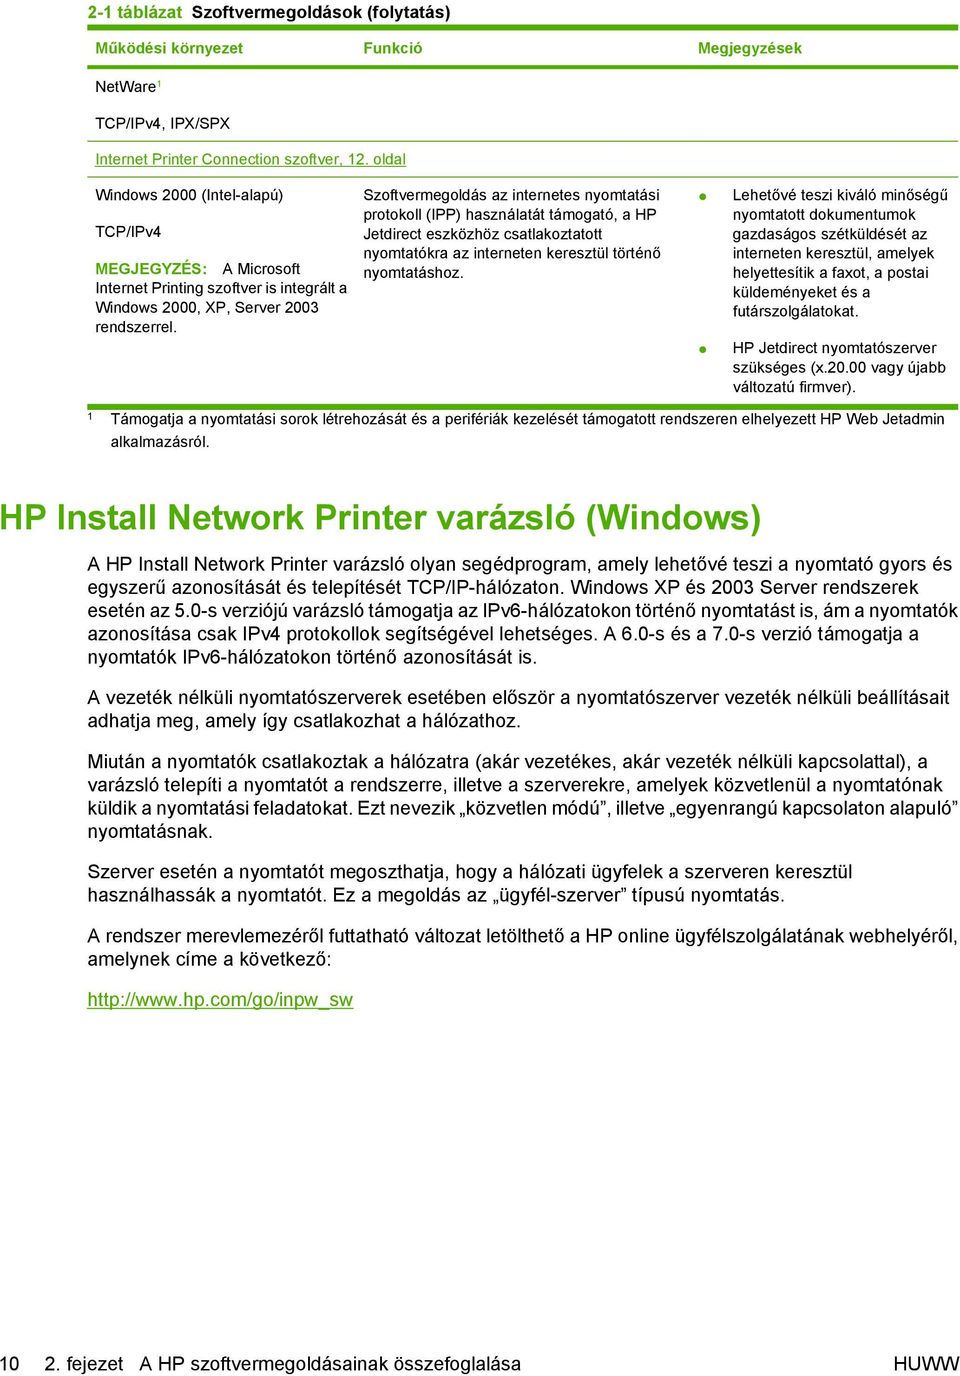 Szoftvermegoldás az internetes nyomtatási protokoll (IPP) használatát támogató, a HP Jetdirect eszközhöz csatlakoztatott nyomtatókra az interneten keresztül történő nyomtatáshoz.